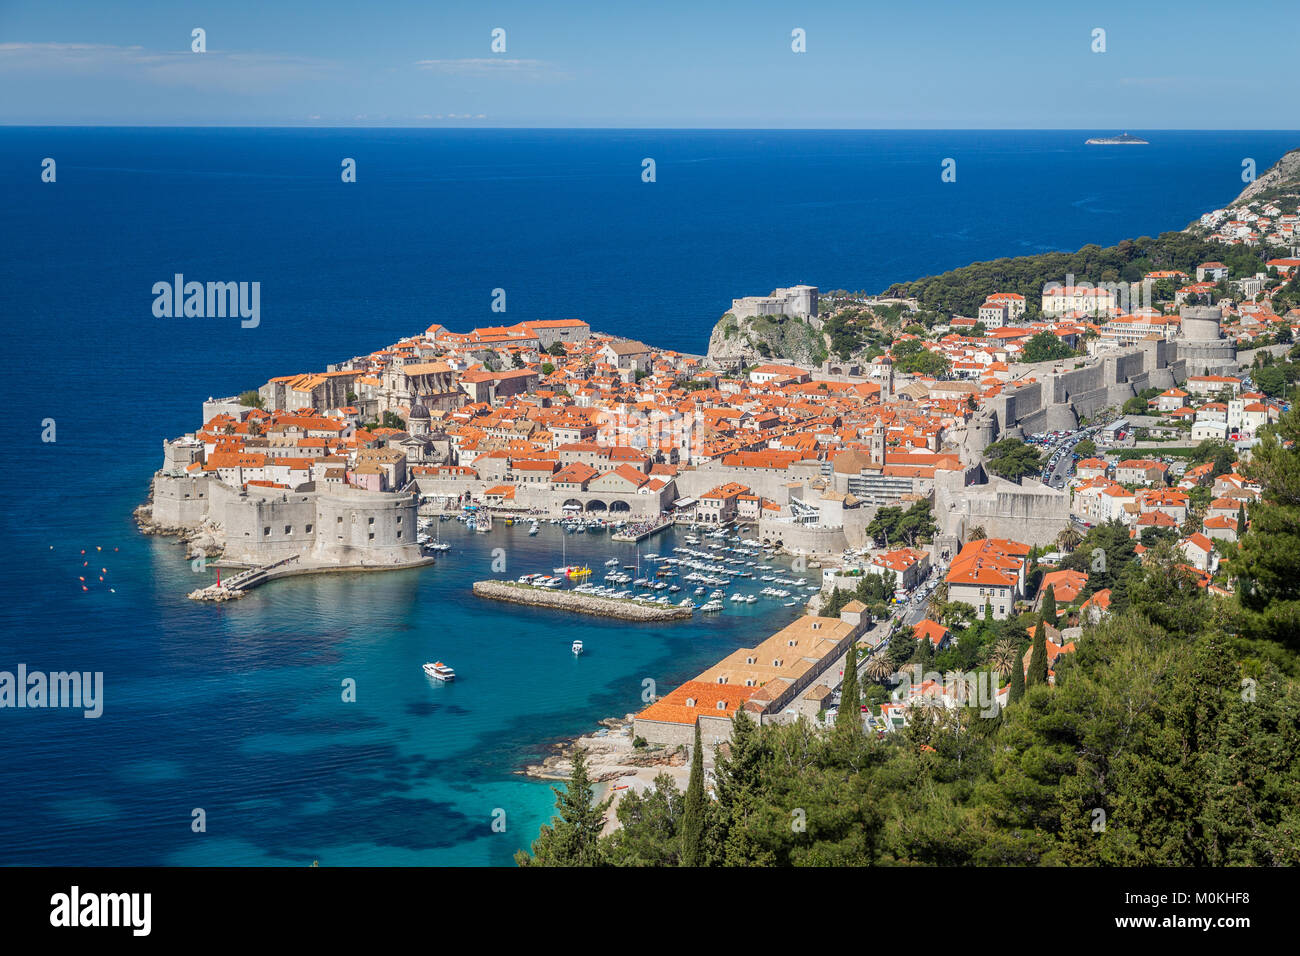 Vue panoramique sur la ville historique de Dubrovnik, l'une des plus célèbres destinations touristiques de la Méditerranée, en été, la Dalmatie, Croatie Banque D'Images